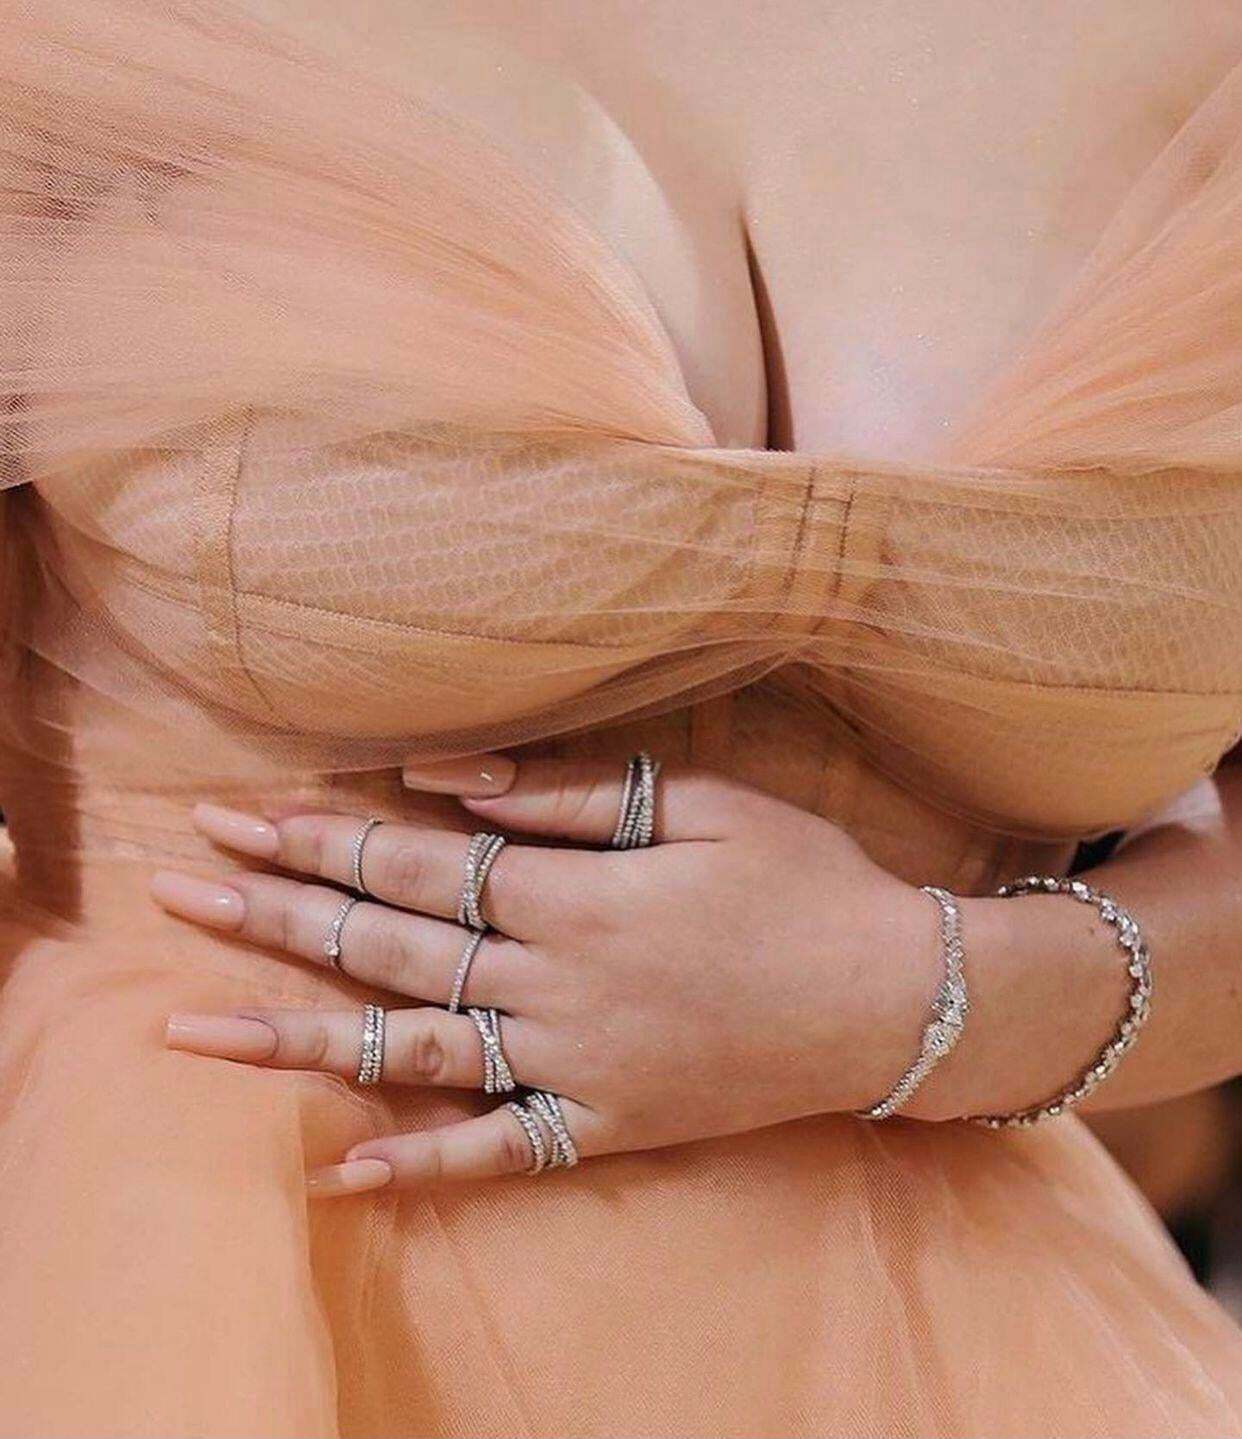 Billie Eilishs huge tits in dress